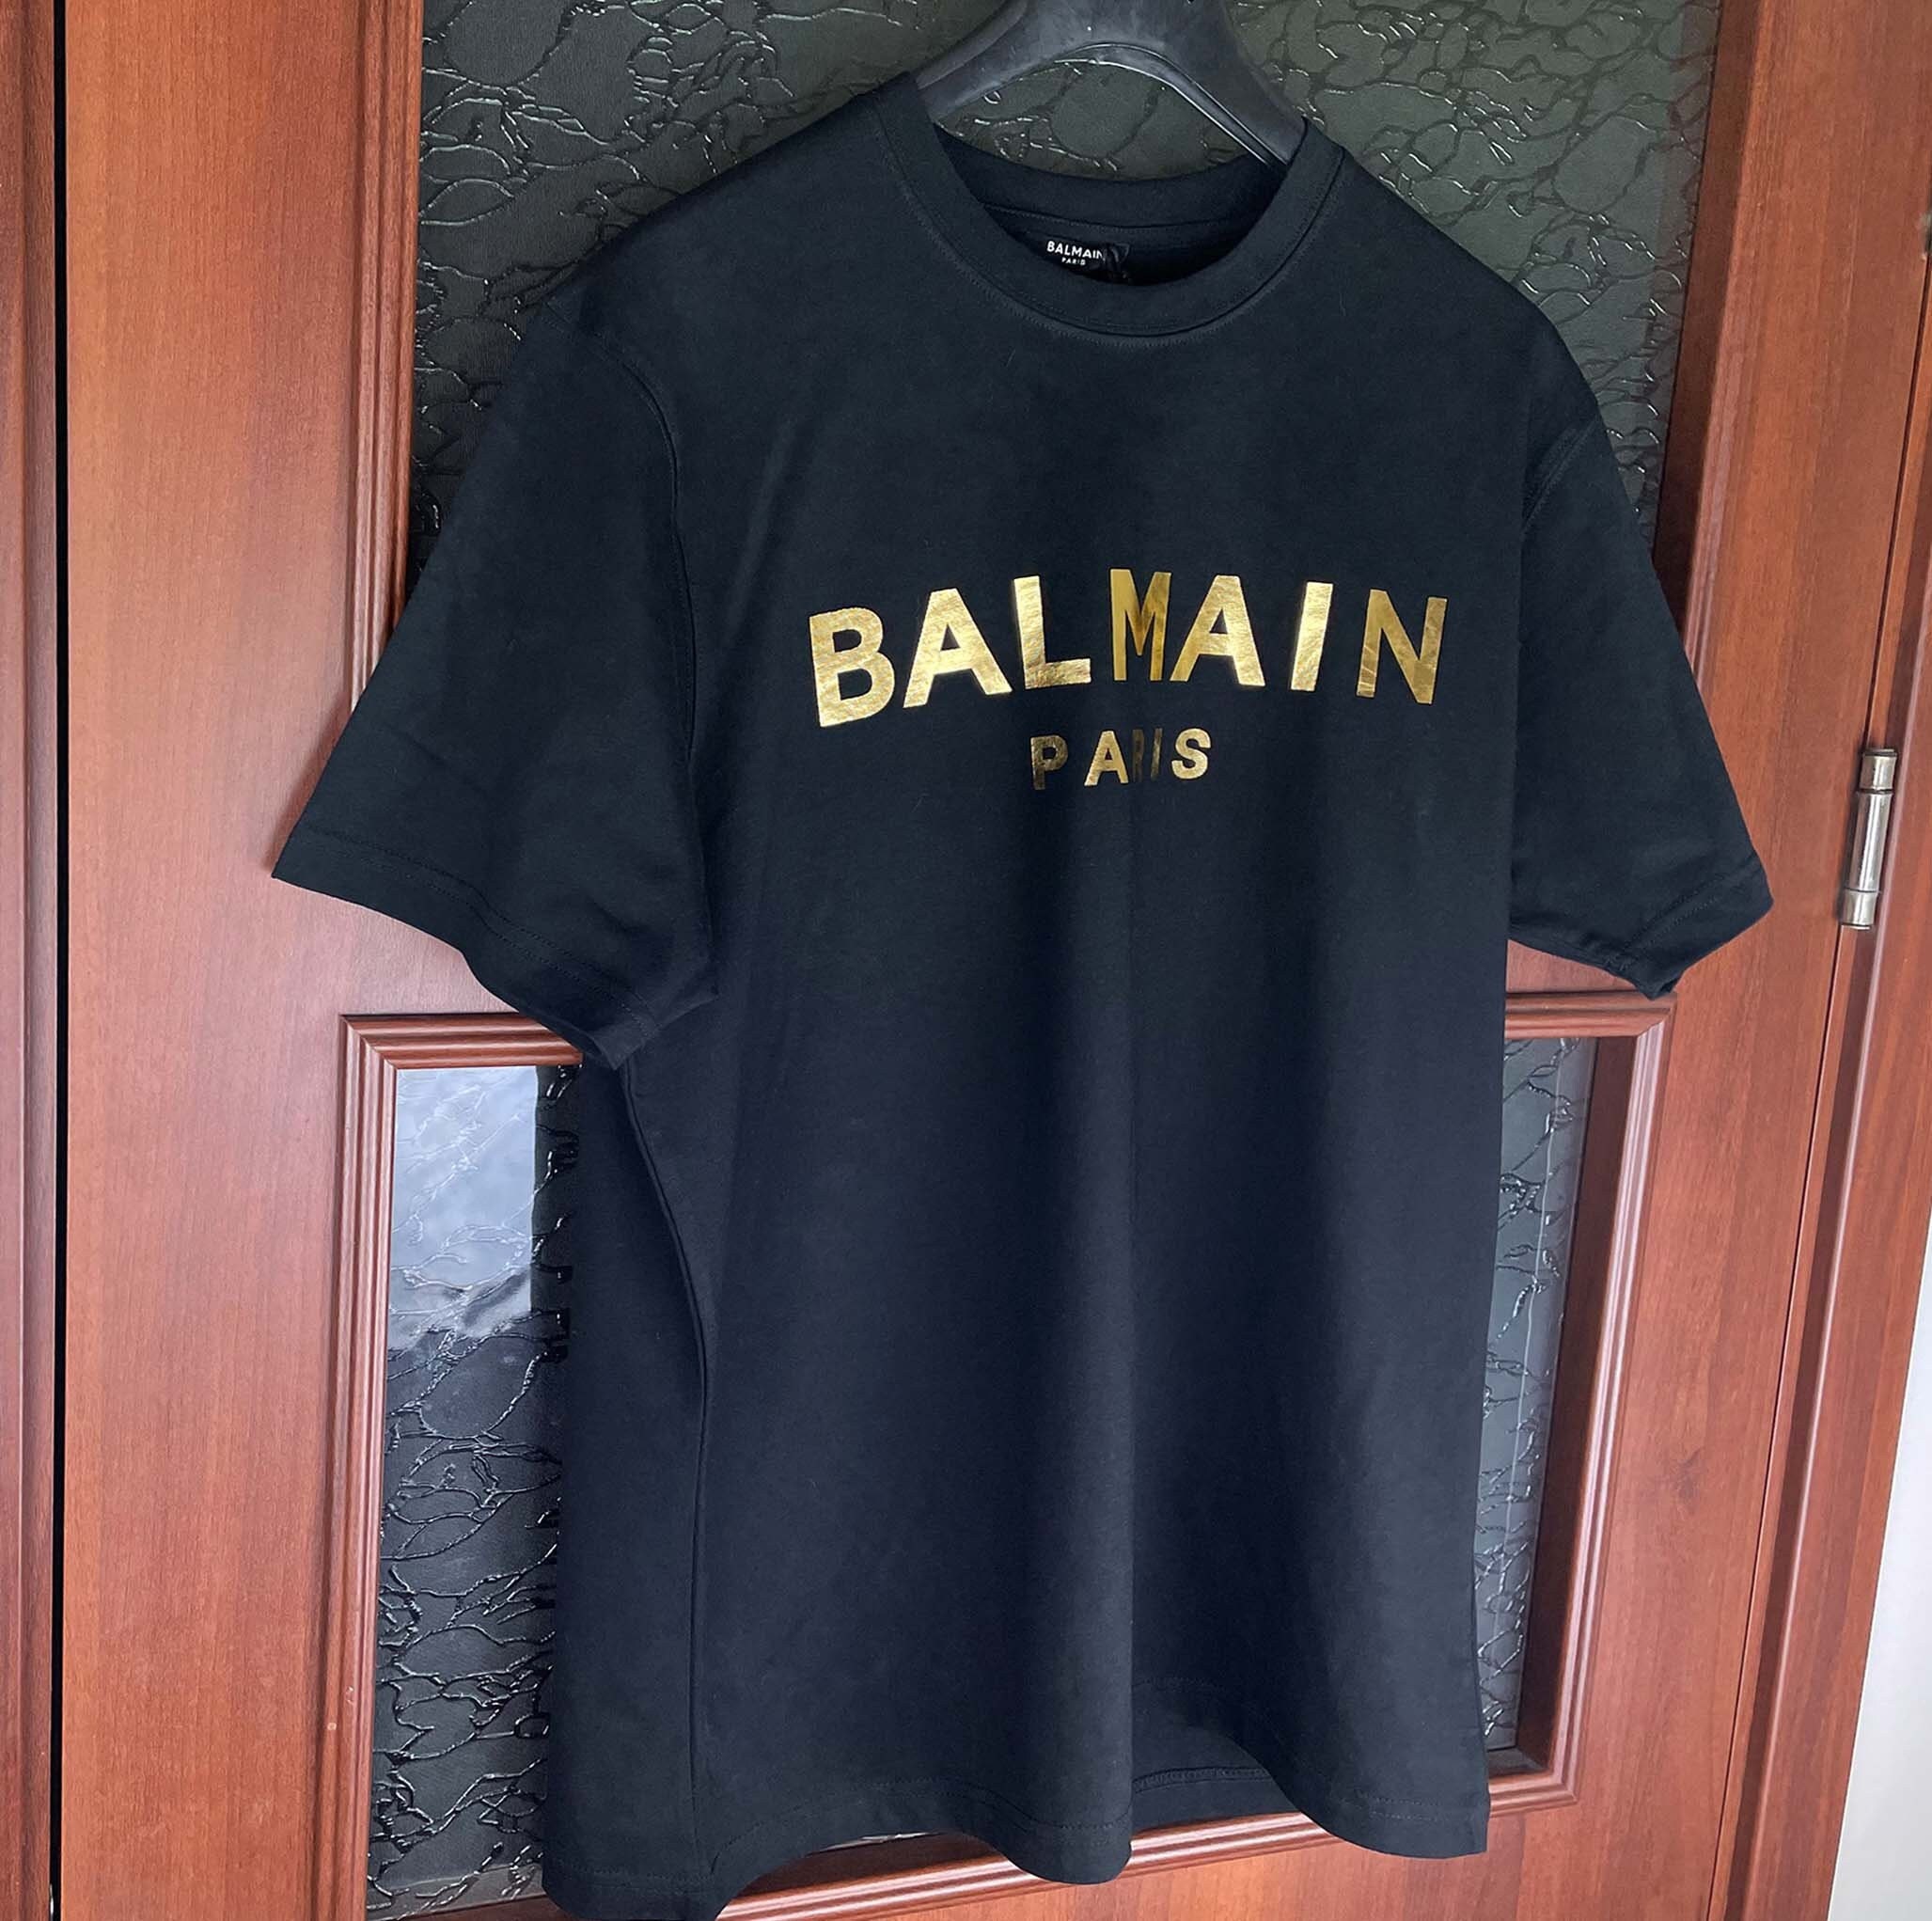 Balmain Shirt Women -